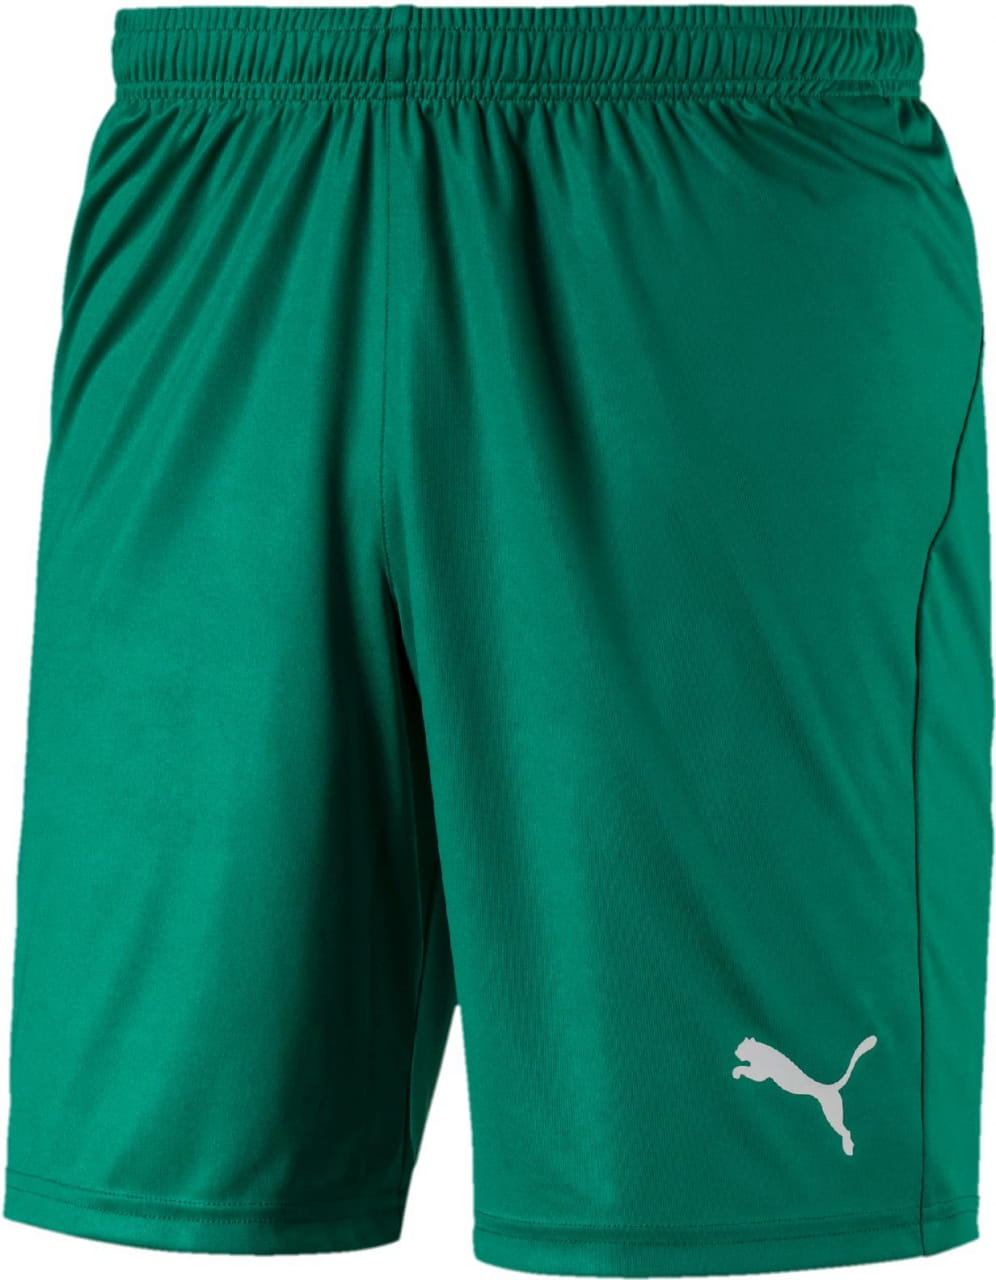 Pánské fotbalové kraťasy Puma Liga Shorts Core